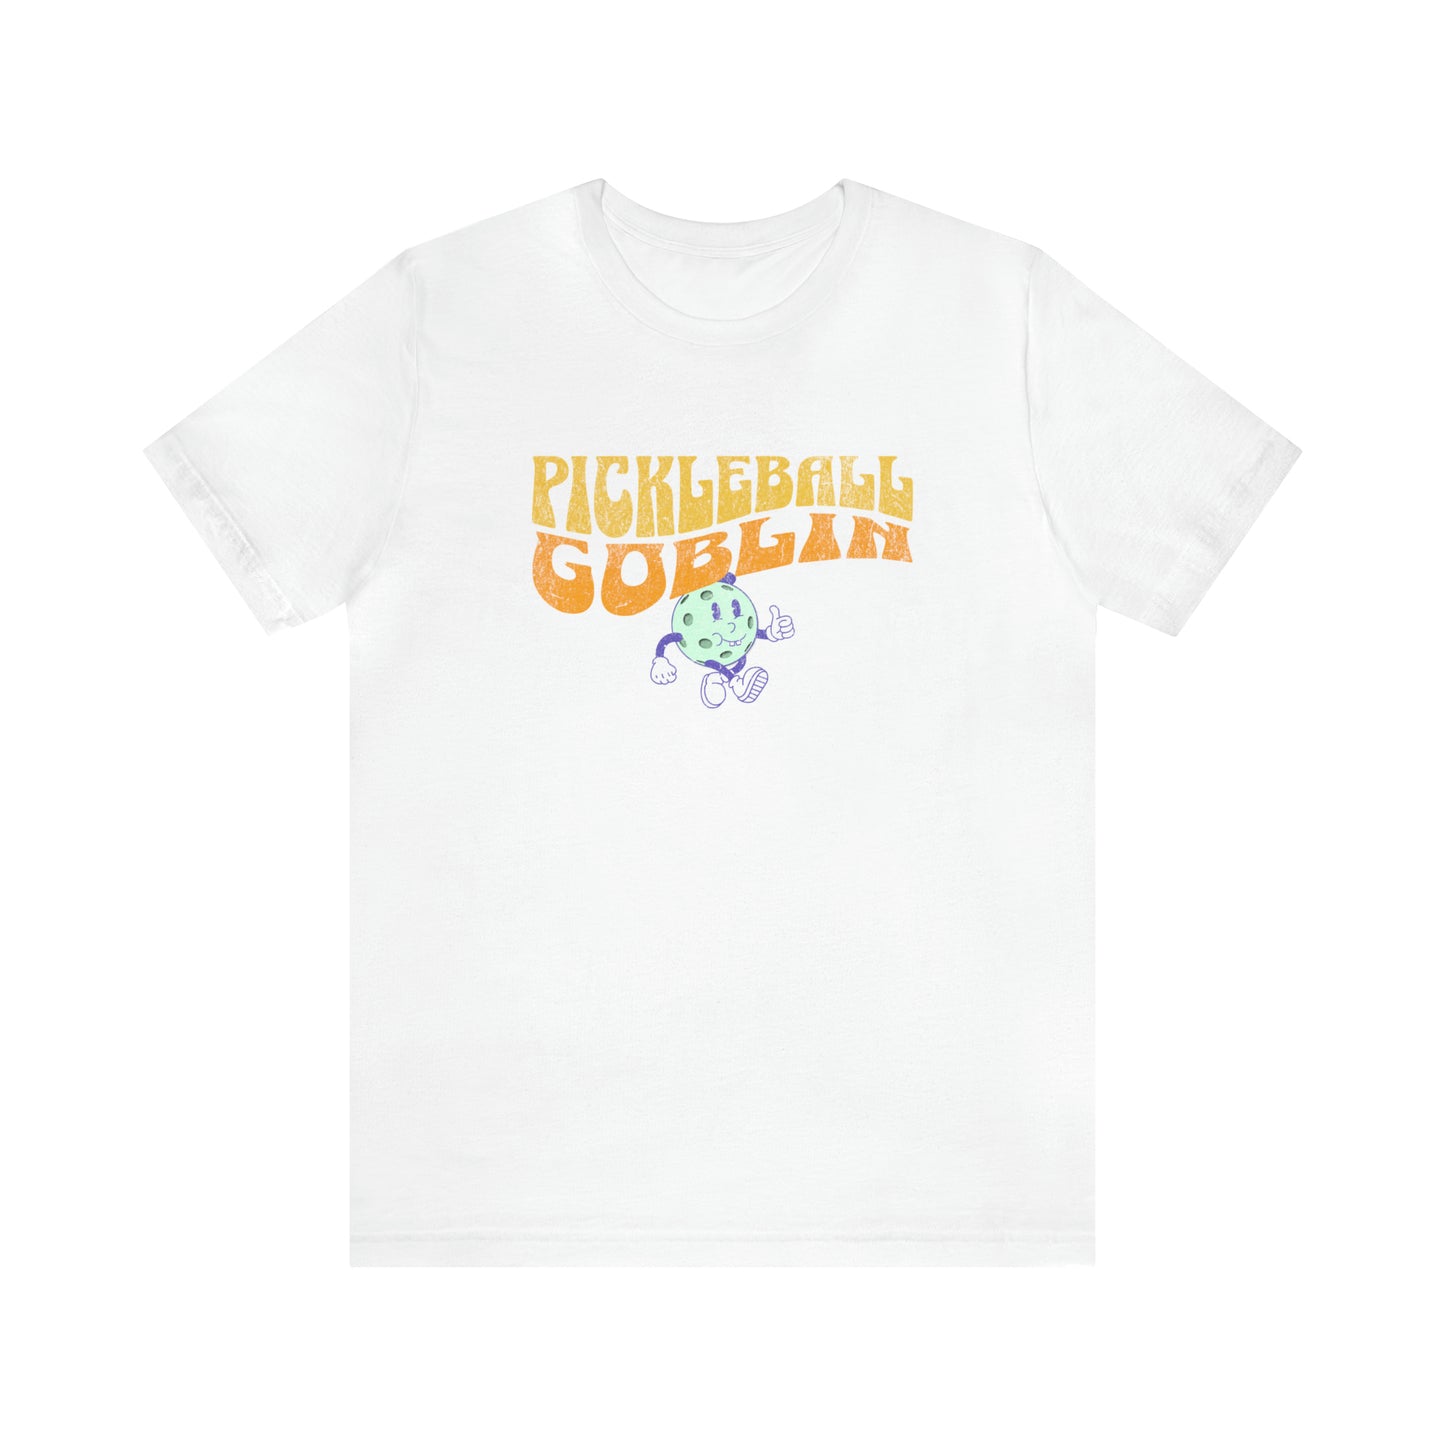 Pickleball Goblin Halloween Unisex T-Shirt